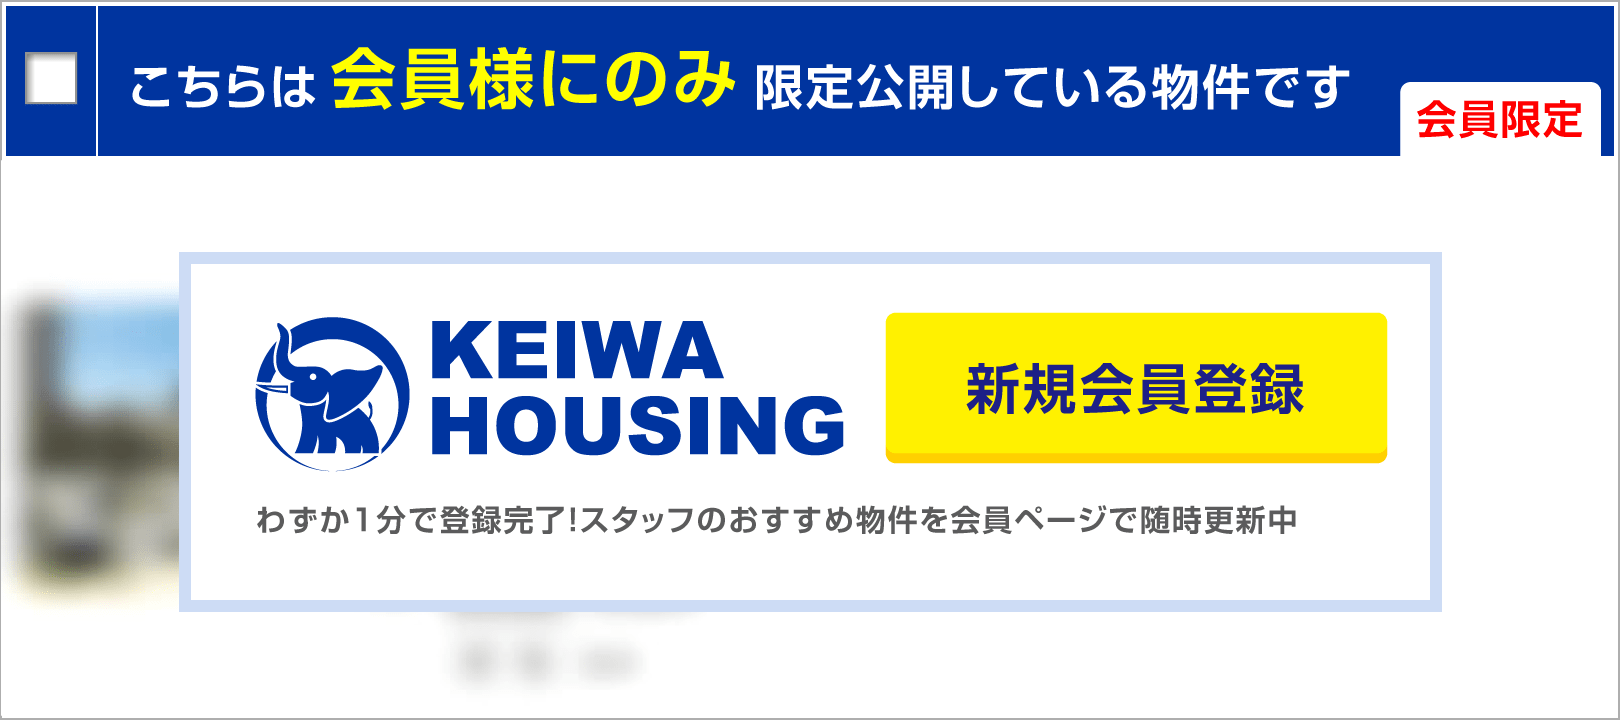 （会員限定）こちらは会員様にのみ限定公開している物件です。KEIWA HOUSING 新規会員登録 わずか1分で登録完了！スタッフのおすすめ物件を会員ページで随時更新中